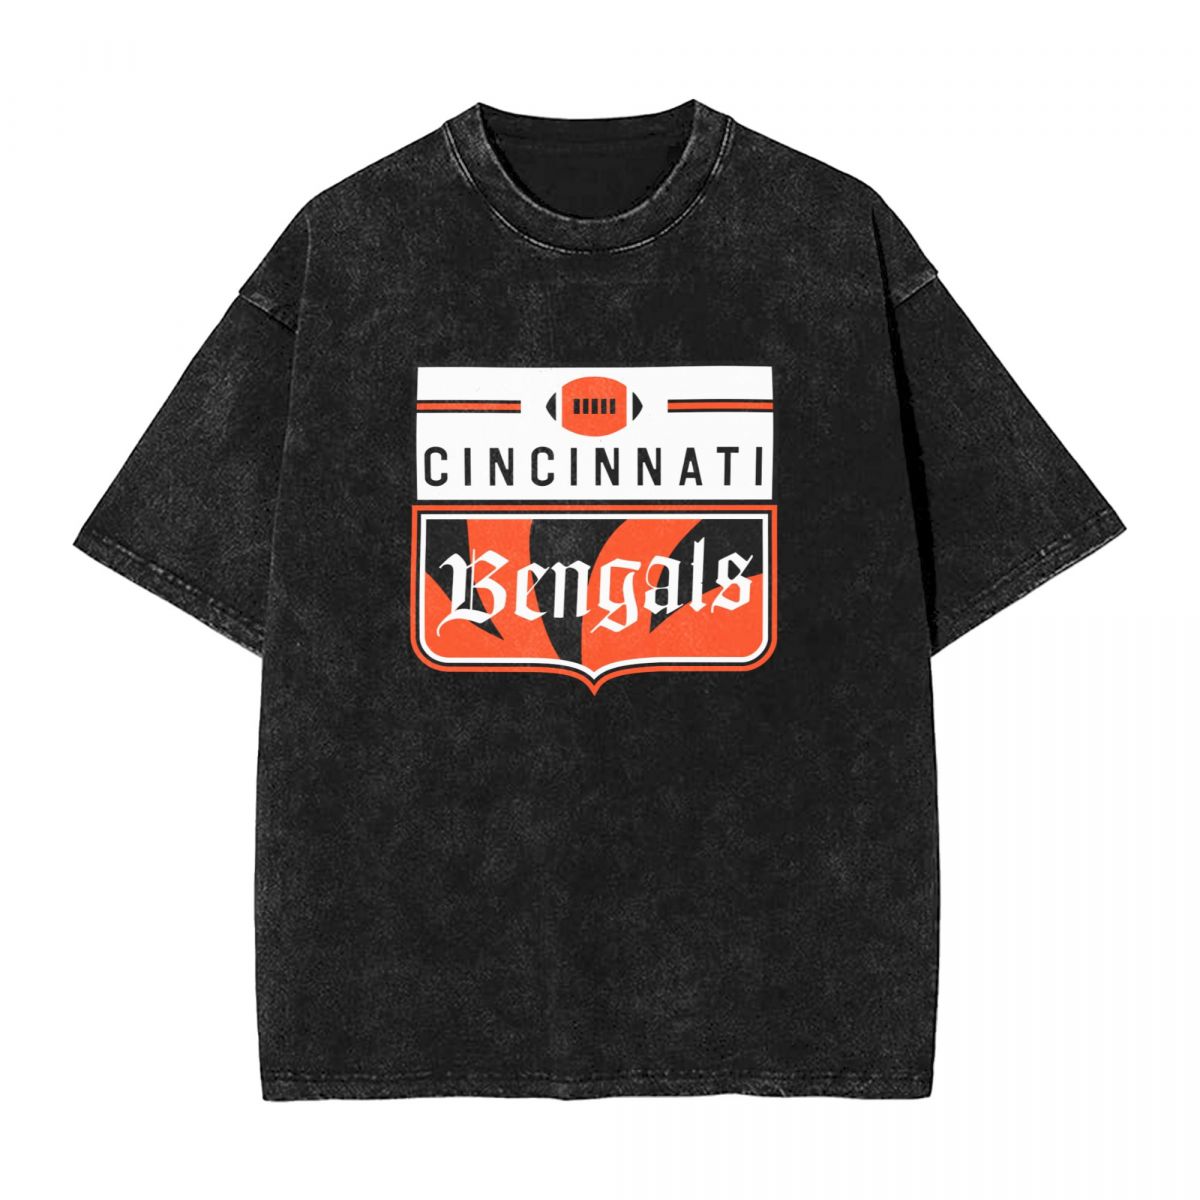 Cincinnati Bengals Vintage Oversized T-Shirt Men's